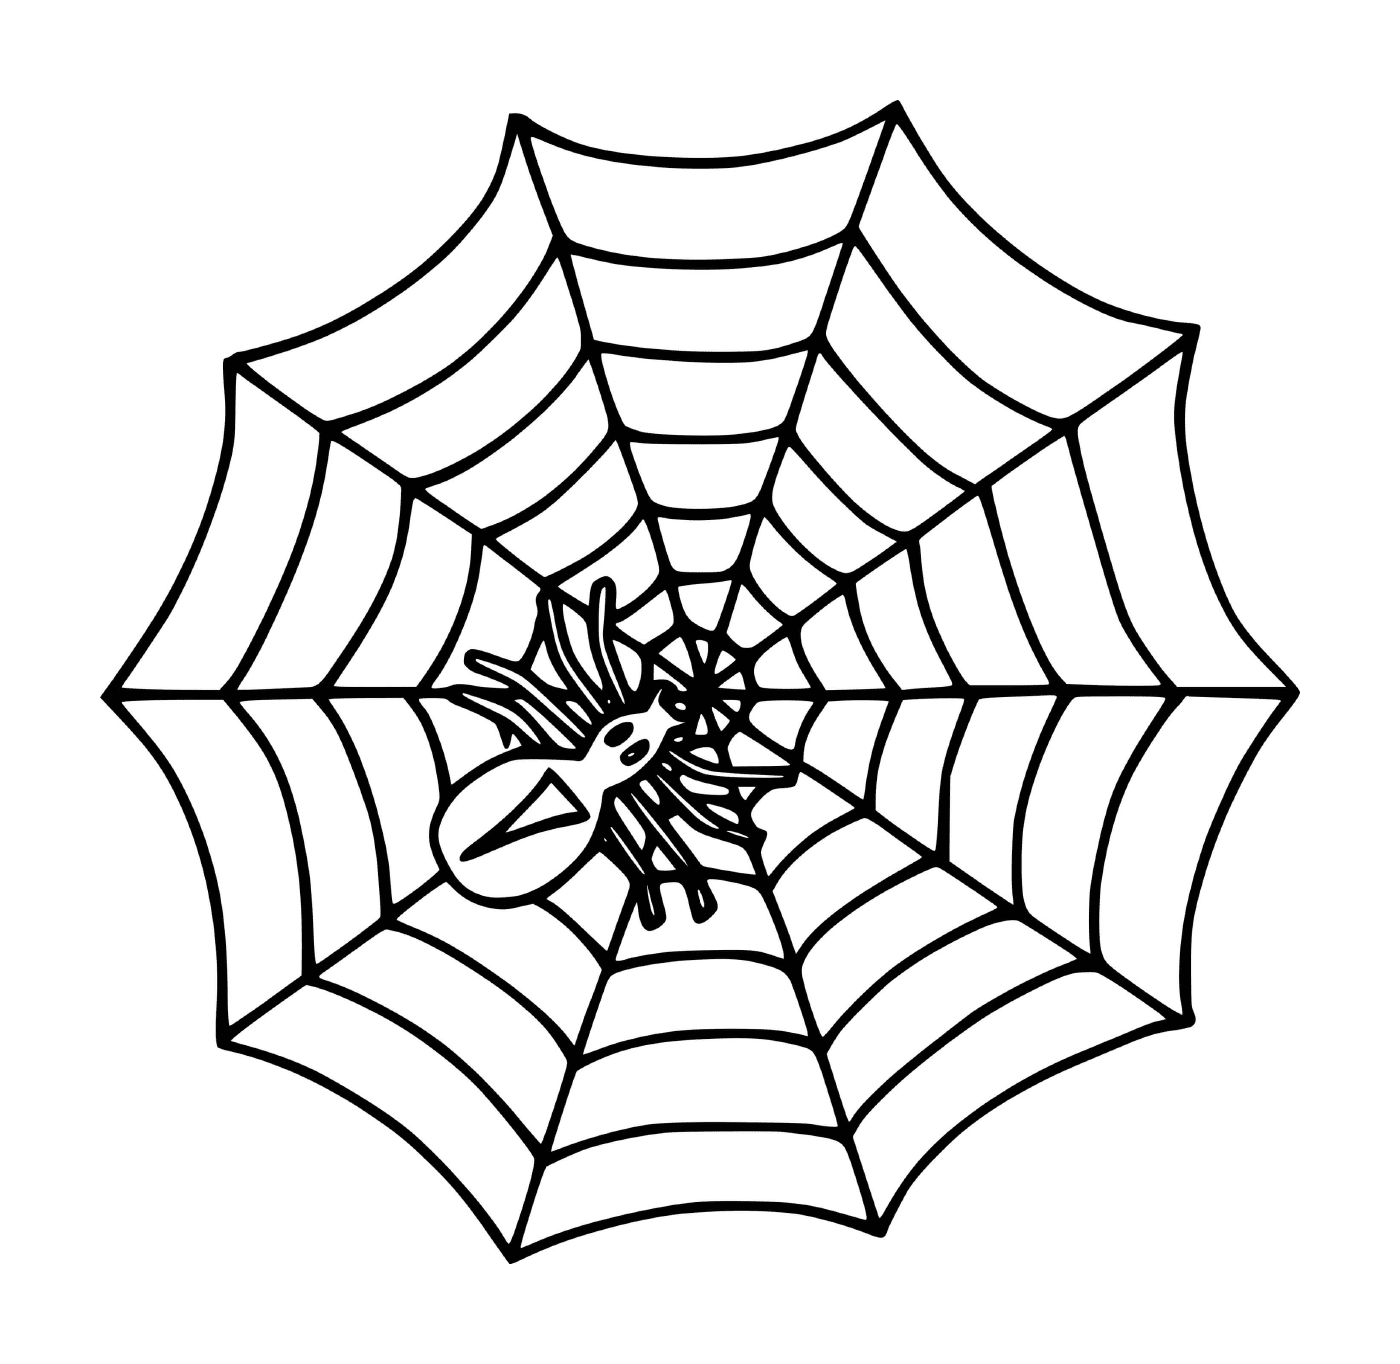  Eine einfache Spinne 